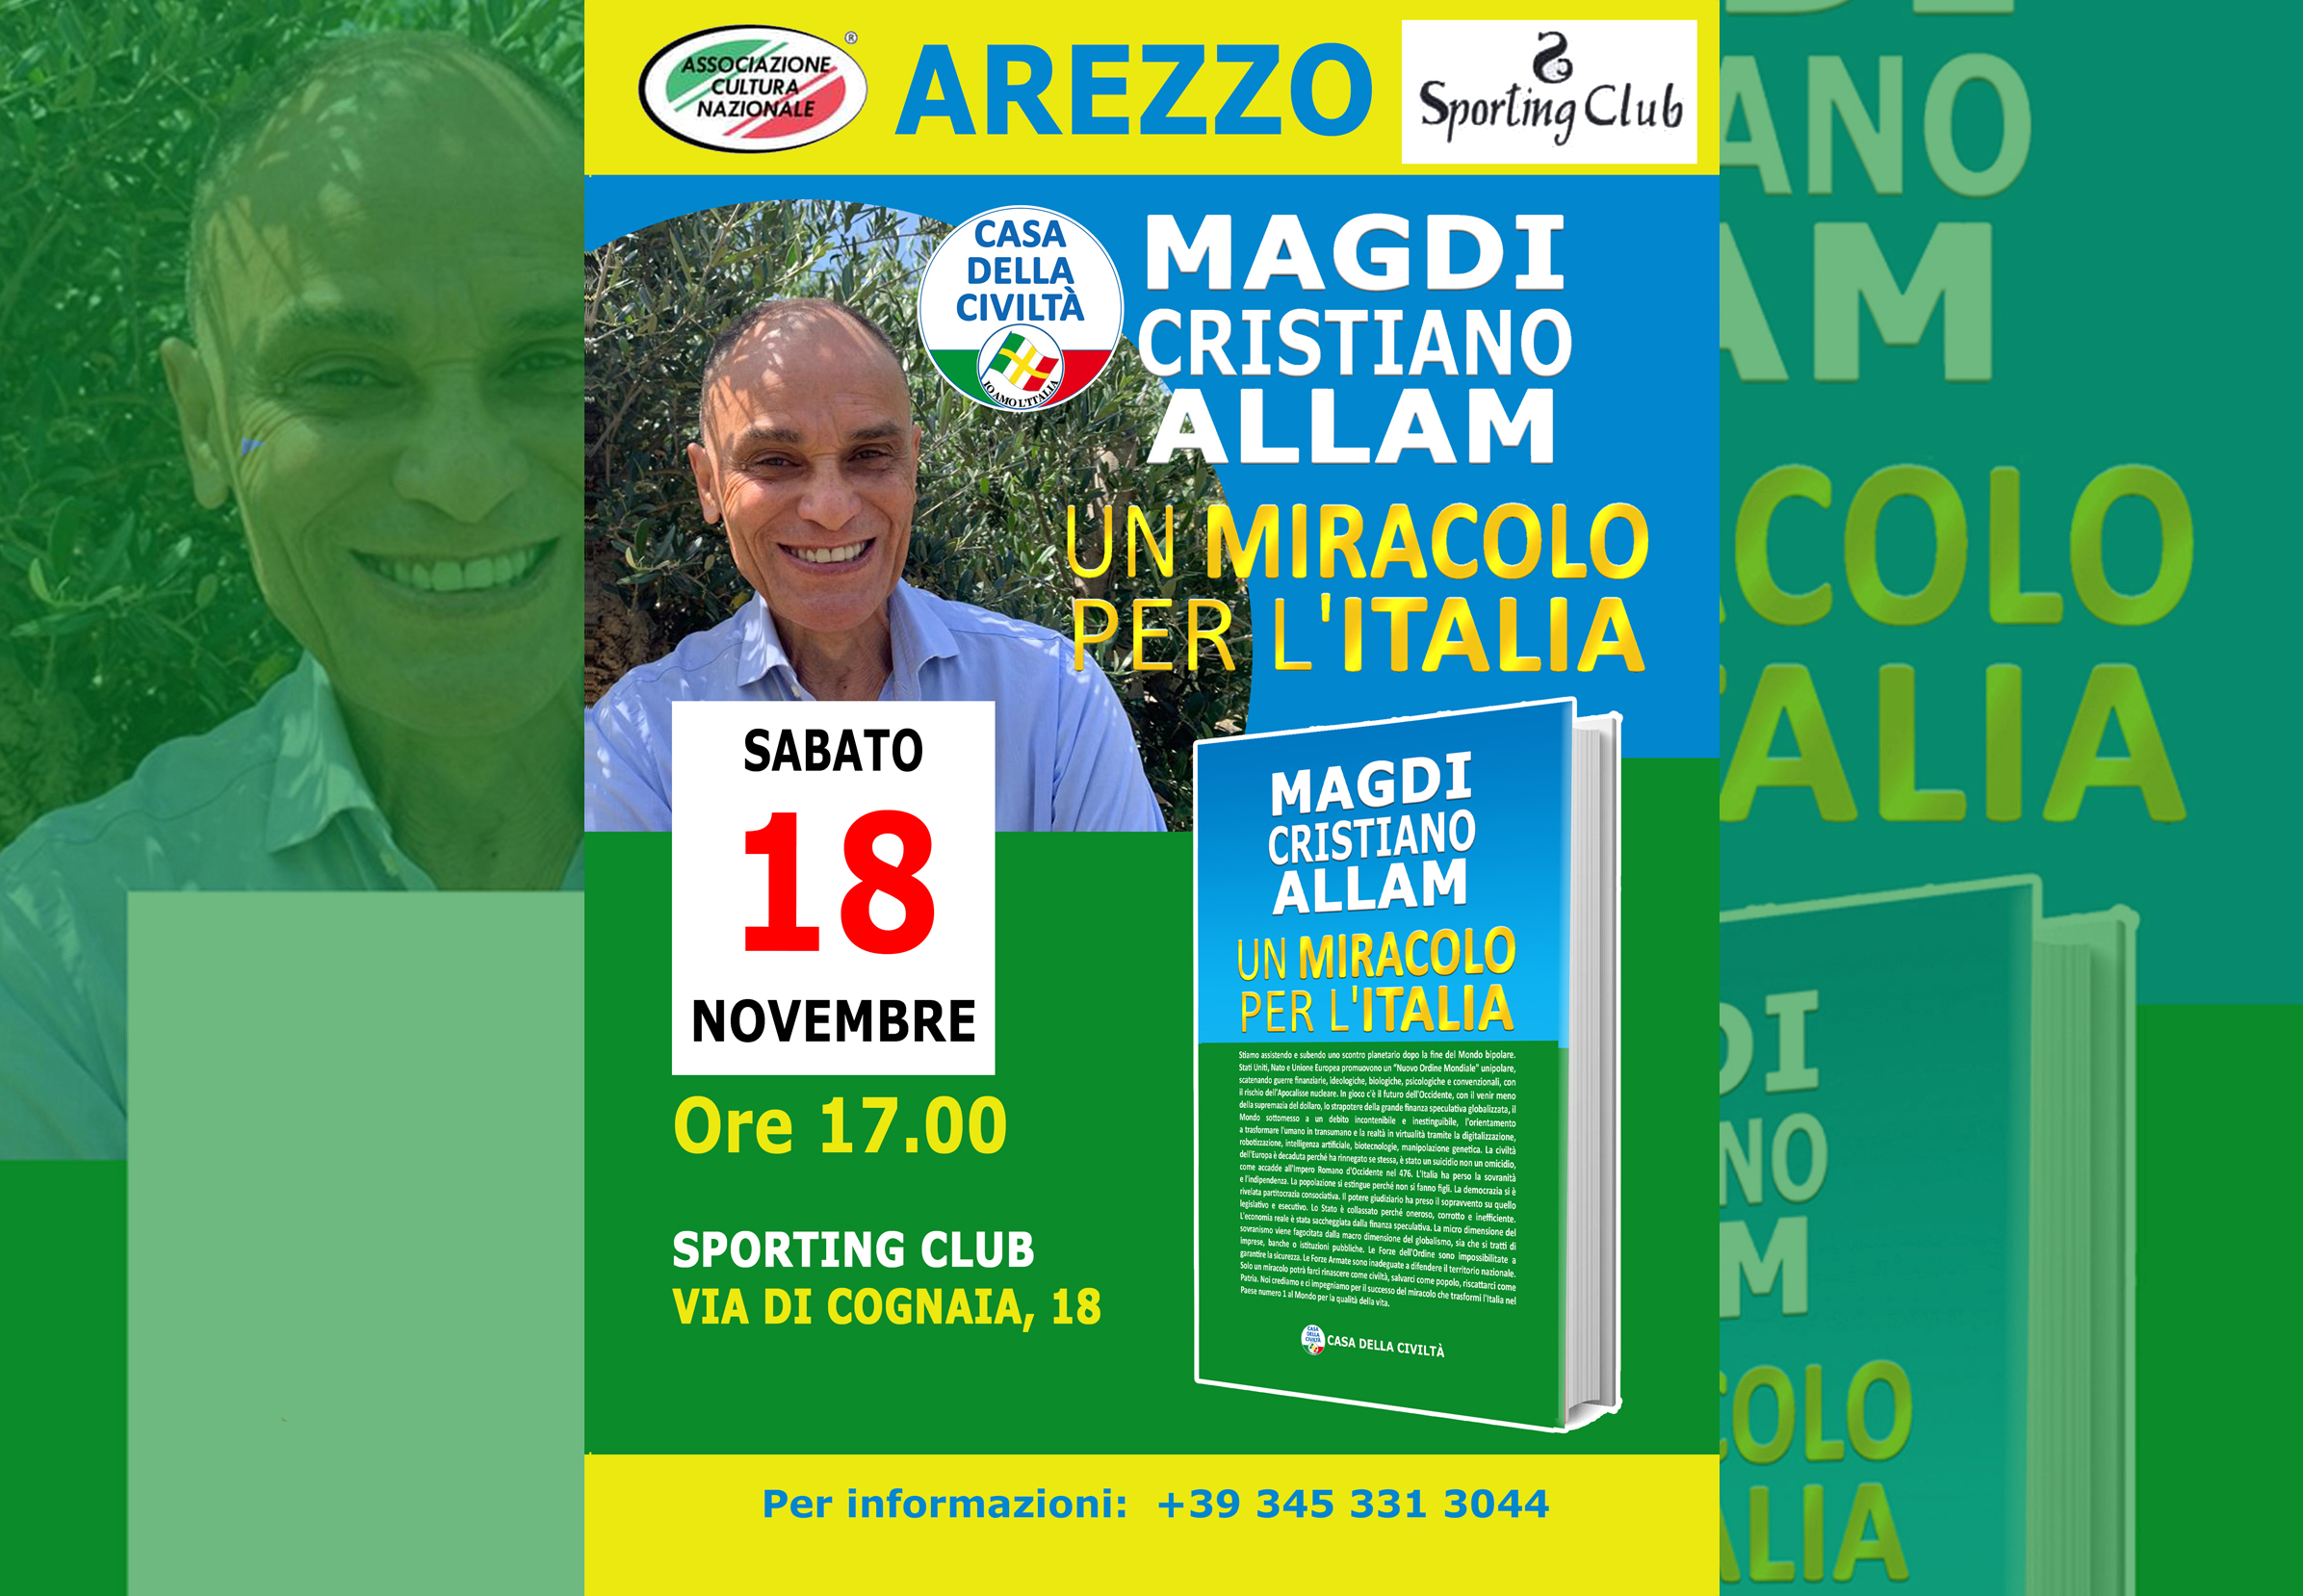 MAGDI CRISTIANO ALLAM ad Arezzo. Sabato 18 novembre, alle ore 17.00, presso lo Sporting Club, Via di Cognaia, 18